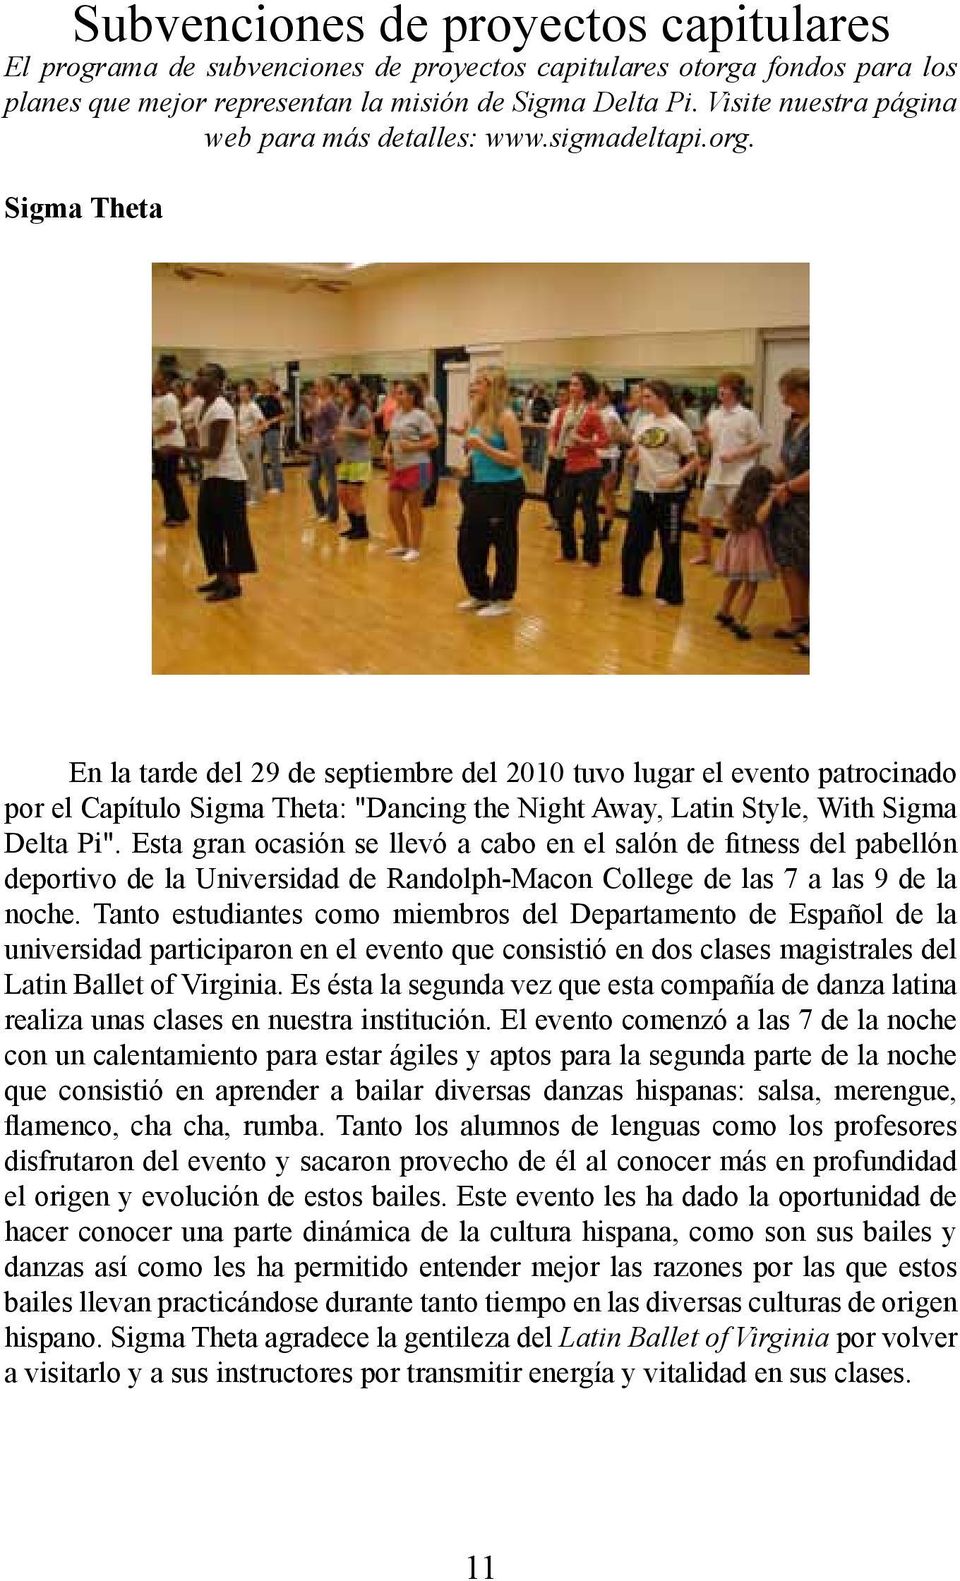 Sigma Theta En la tarde del 29 de septiembre del 2010 tuvo lugar el evento patrocinado por el Capítulo Sigma Theta: "Dancing the Night Away, Latin Style, With Sigma Delta Pi".